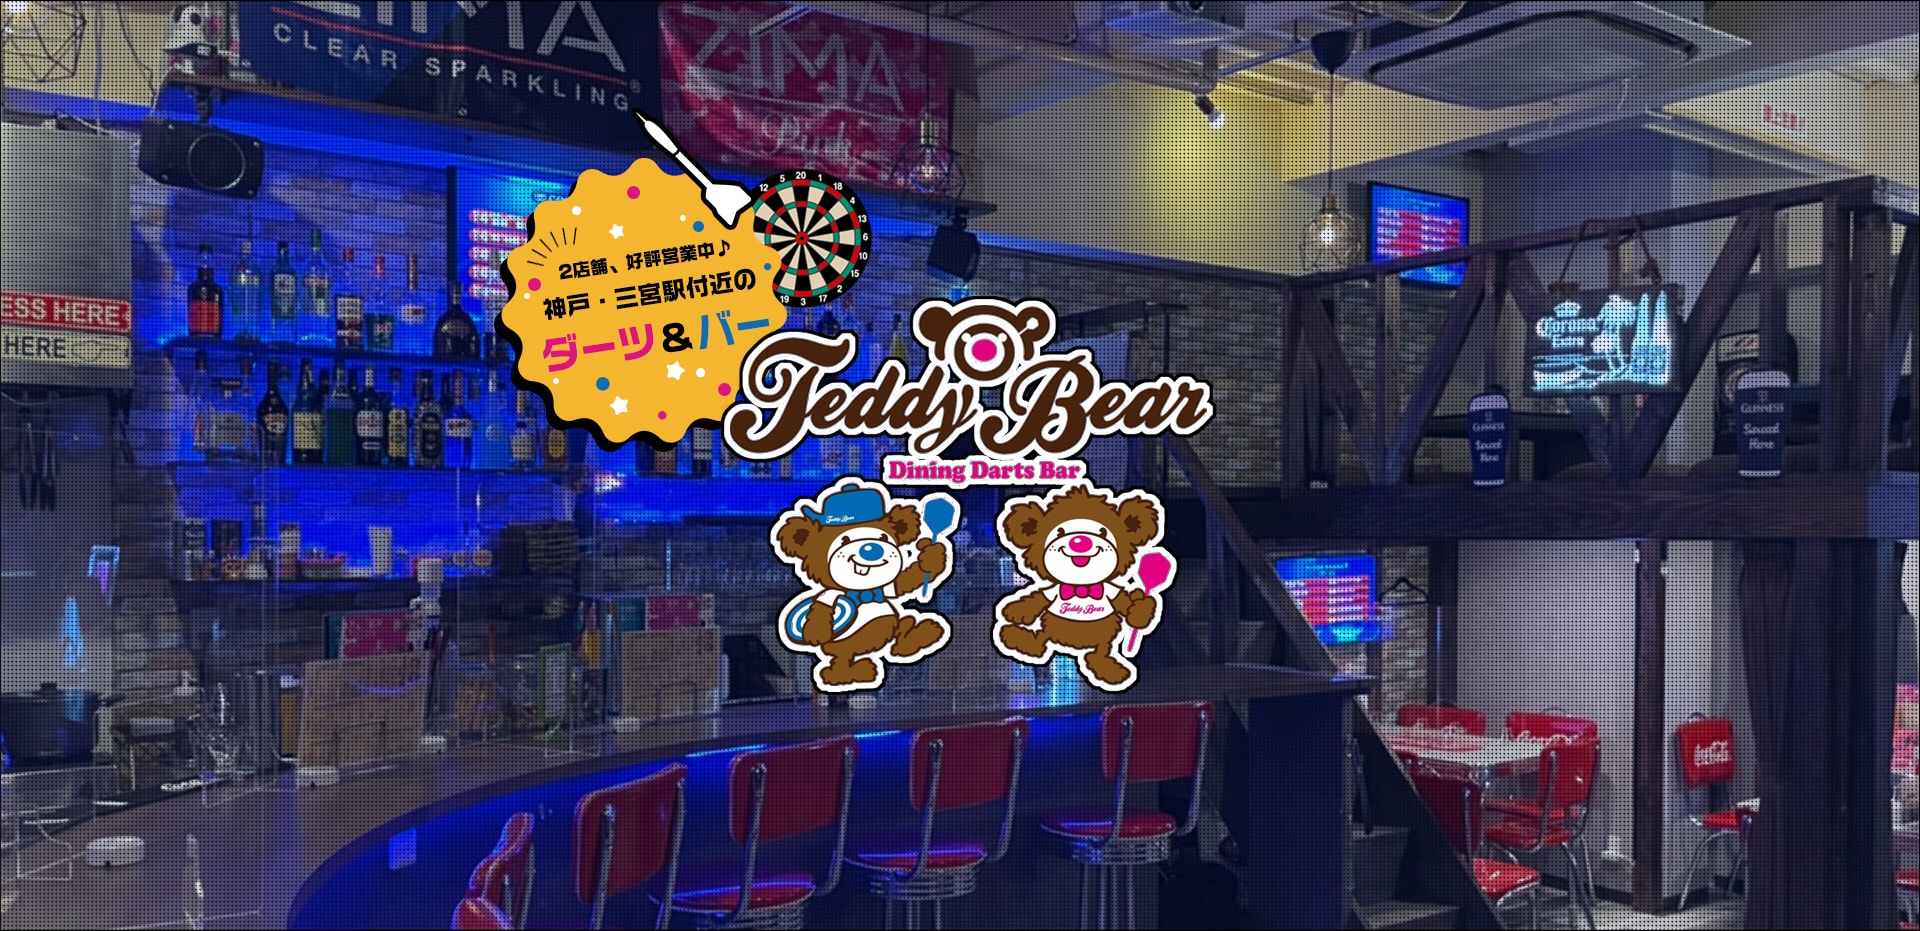 2店舗、好評営業中♪神戸・三宮駅付近のダーツ&バーDining Darts Bar Teddy Bear